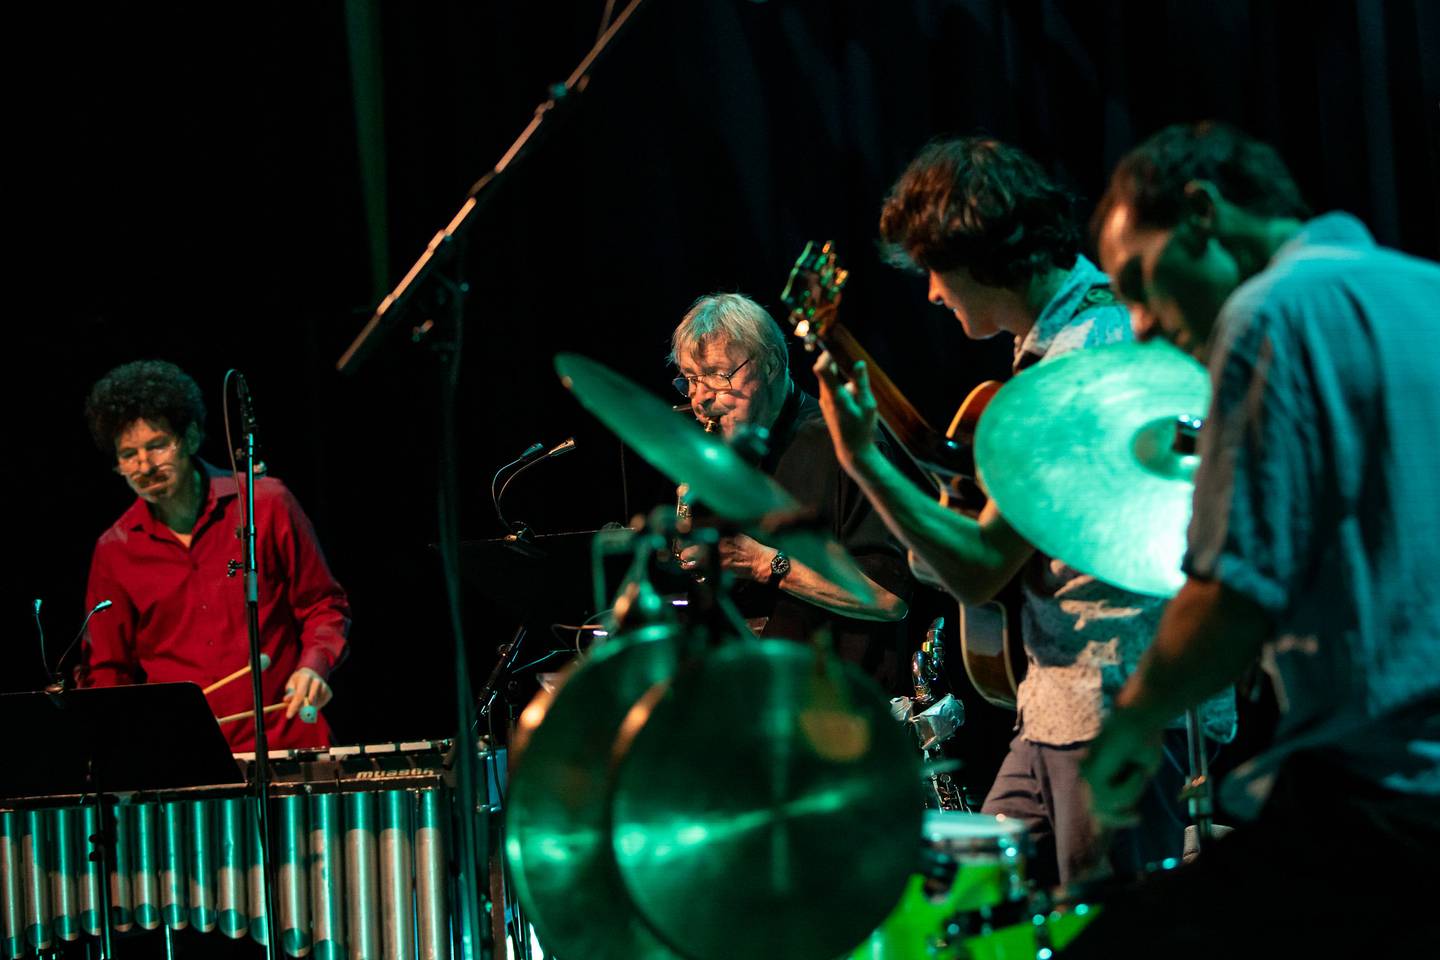 Saksofonisten John Surman gjorde en sterk konsert sammen med sitt nye band på Oslo Jazzfestival, Rob Waring, Rob Luft og Thomas Strønen.